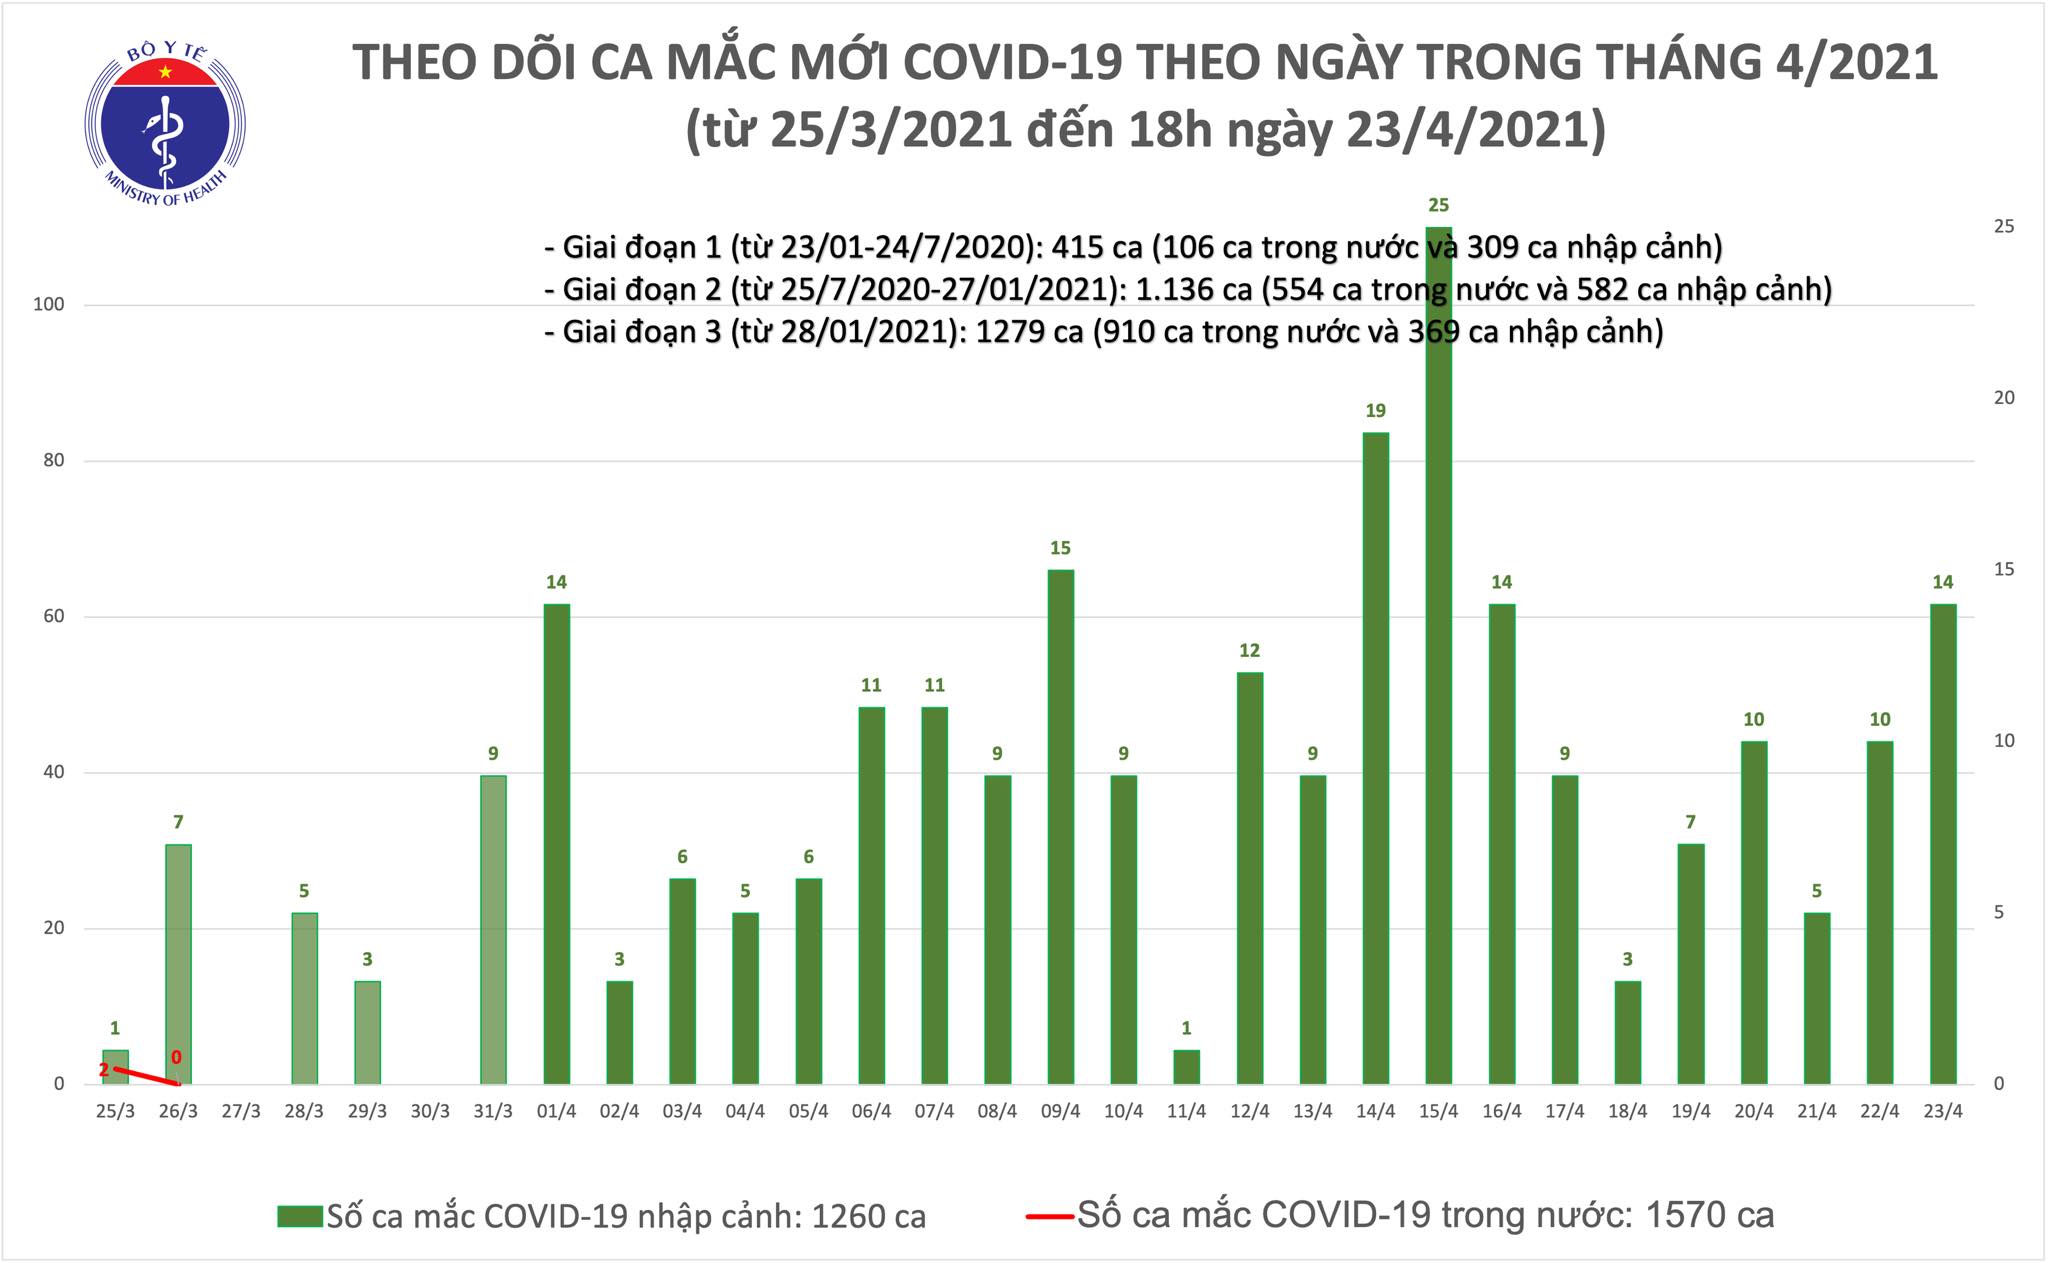 Chiều 23/4: Thêm 6 ca mắc COVID-19 tại An Giang và 4 địa phương khác